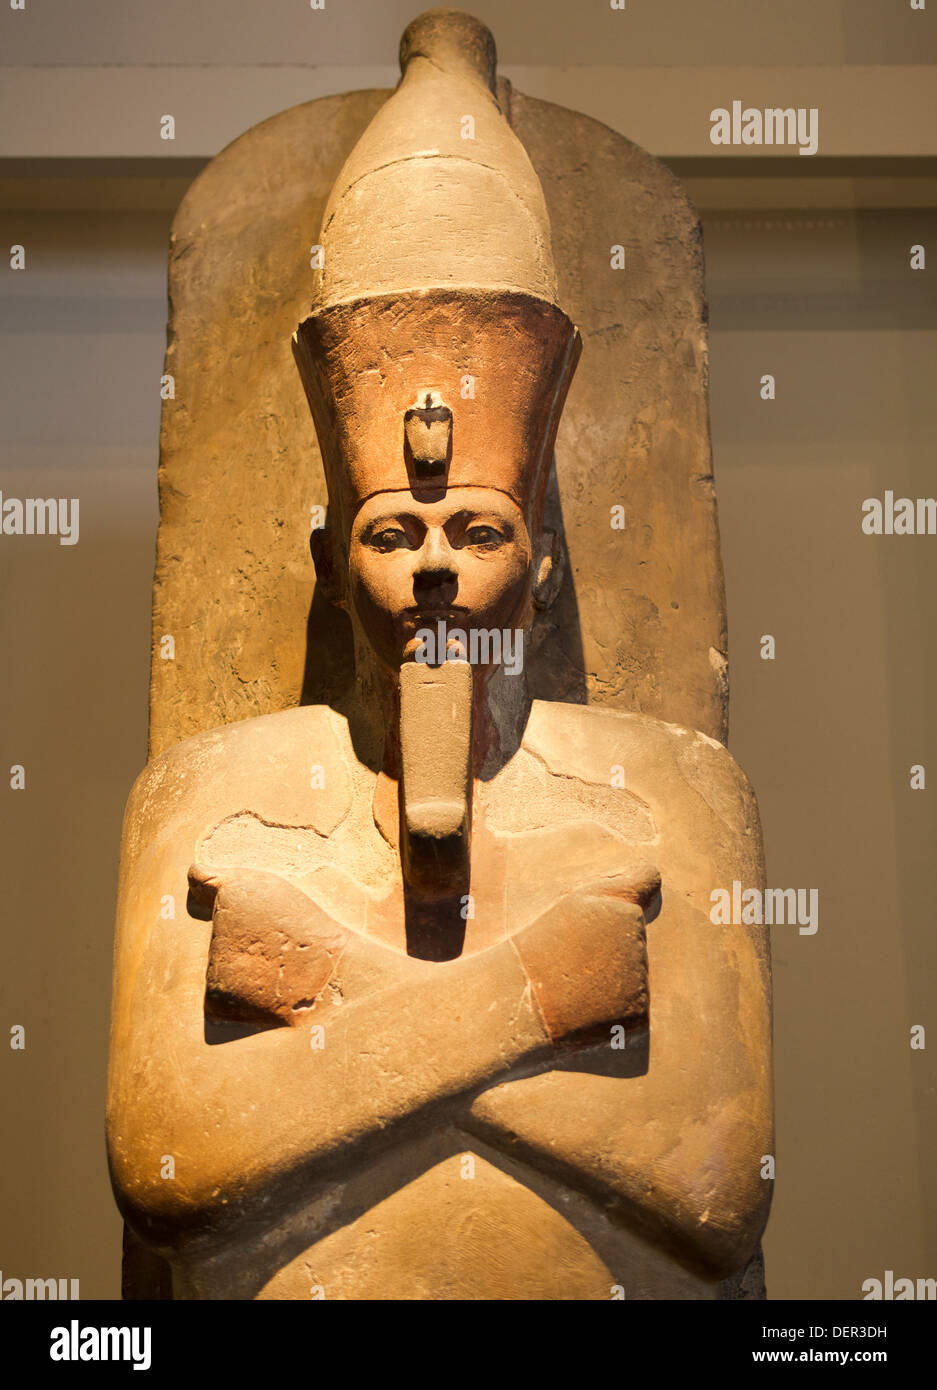 El Museo Británico, el London - estatua de Amenhotep I de Tebas Foto de stock